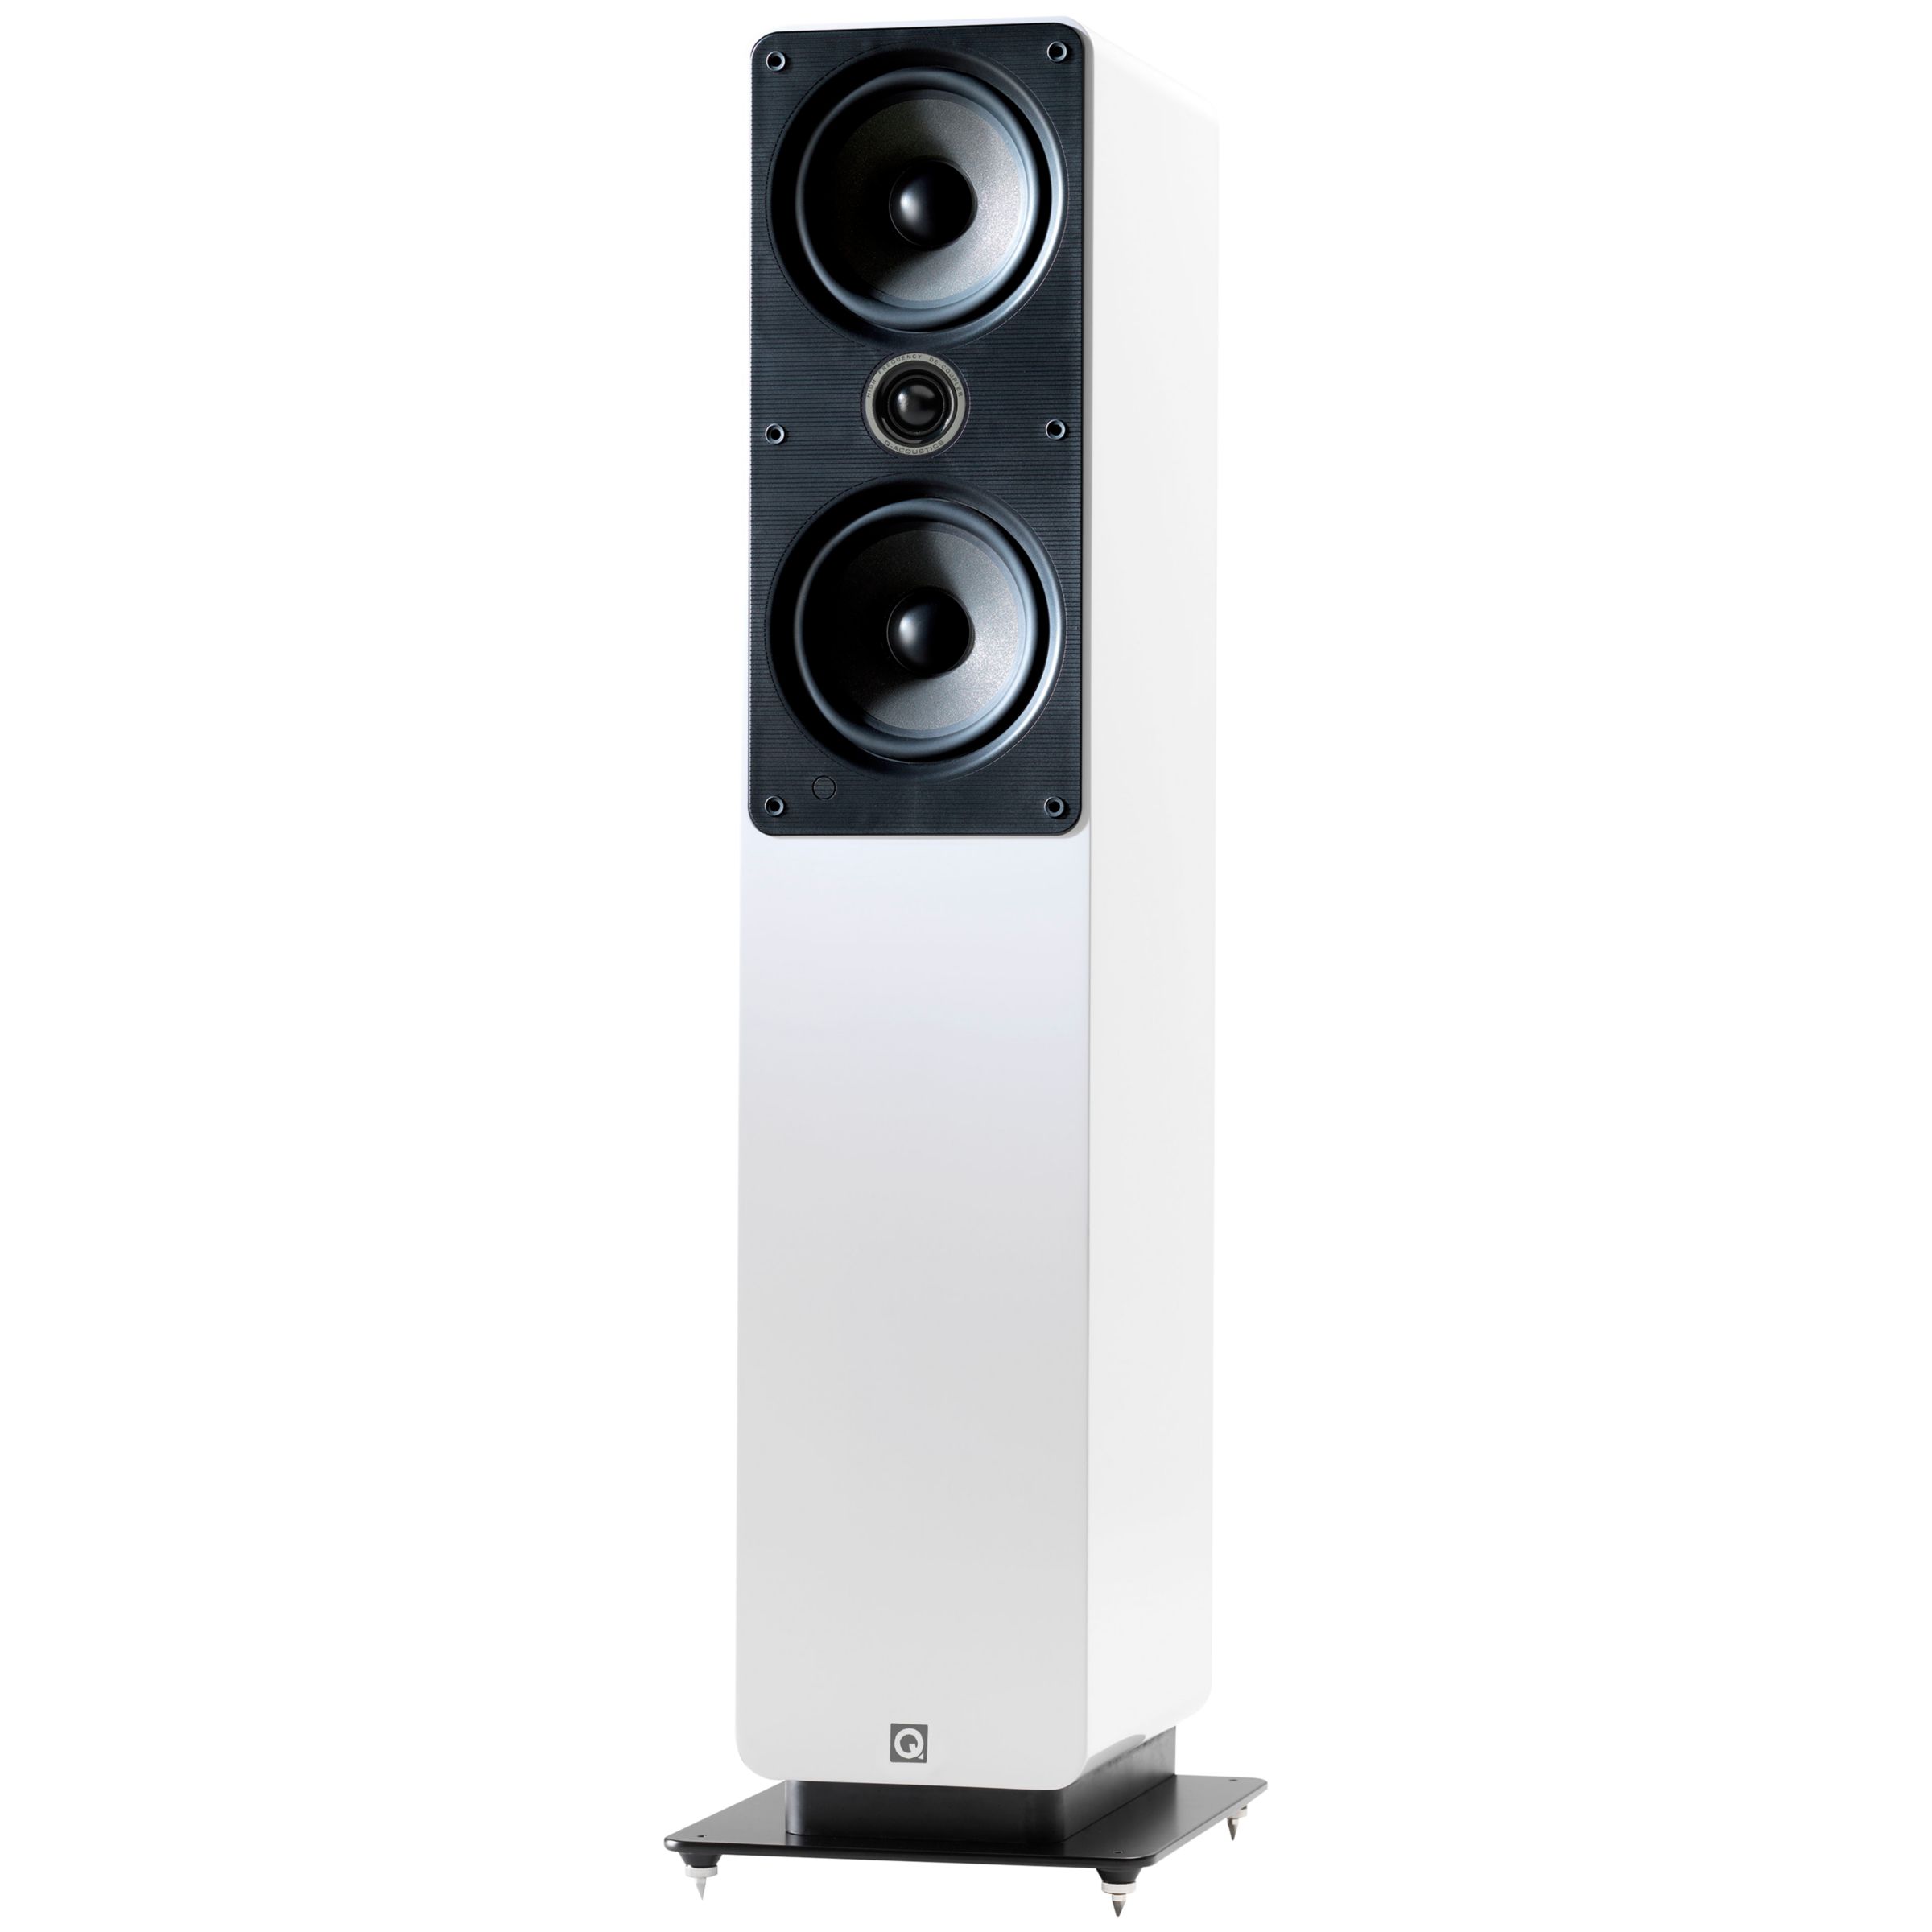 Buy Q Acoustics 2050i Floorstanding Speakers, White Online at johnlewis.com